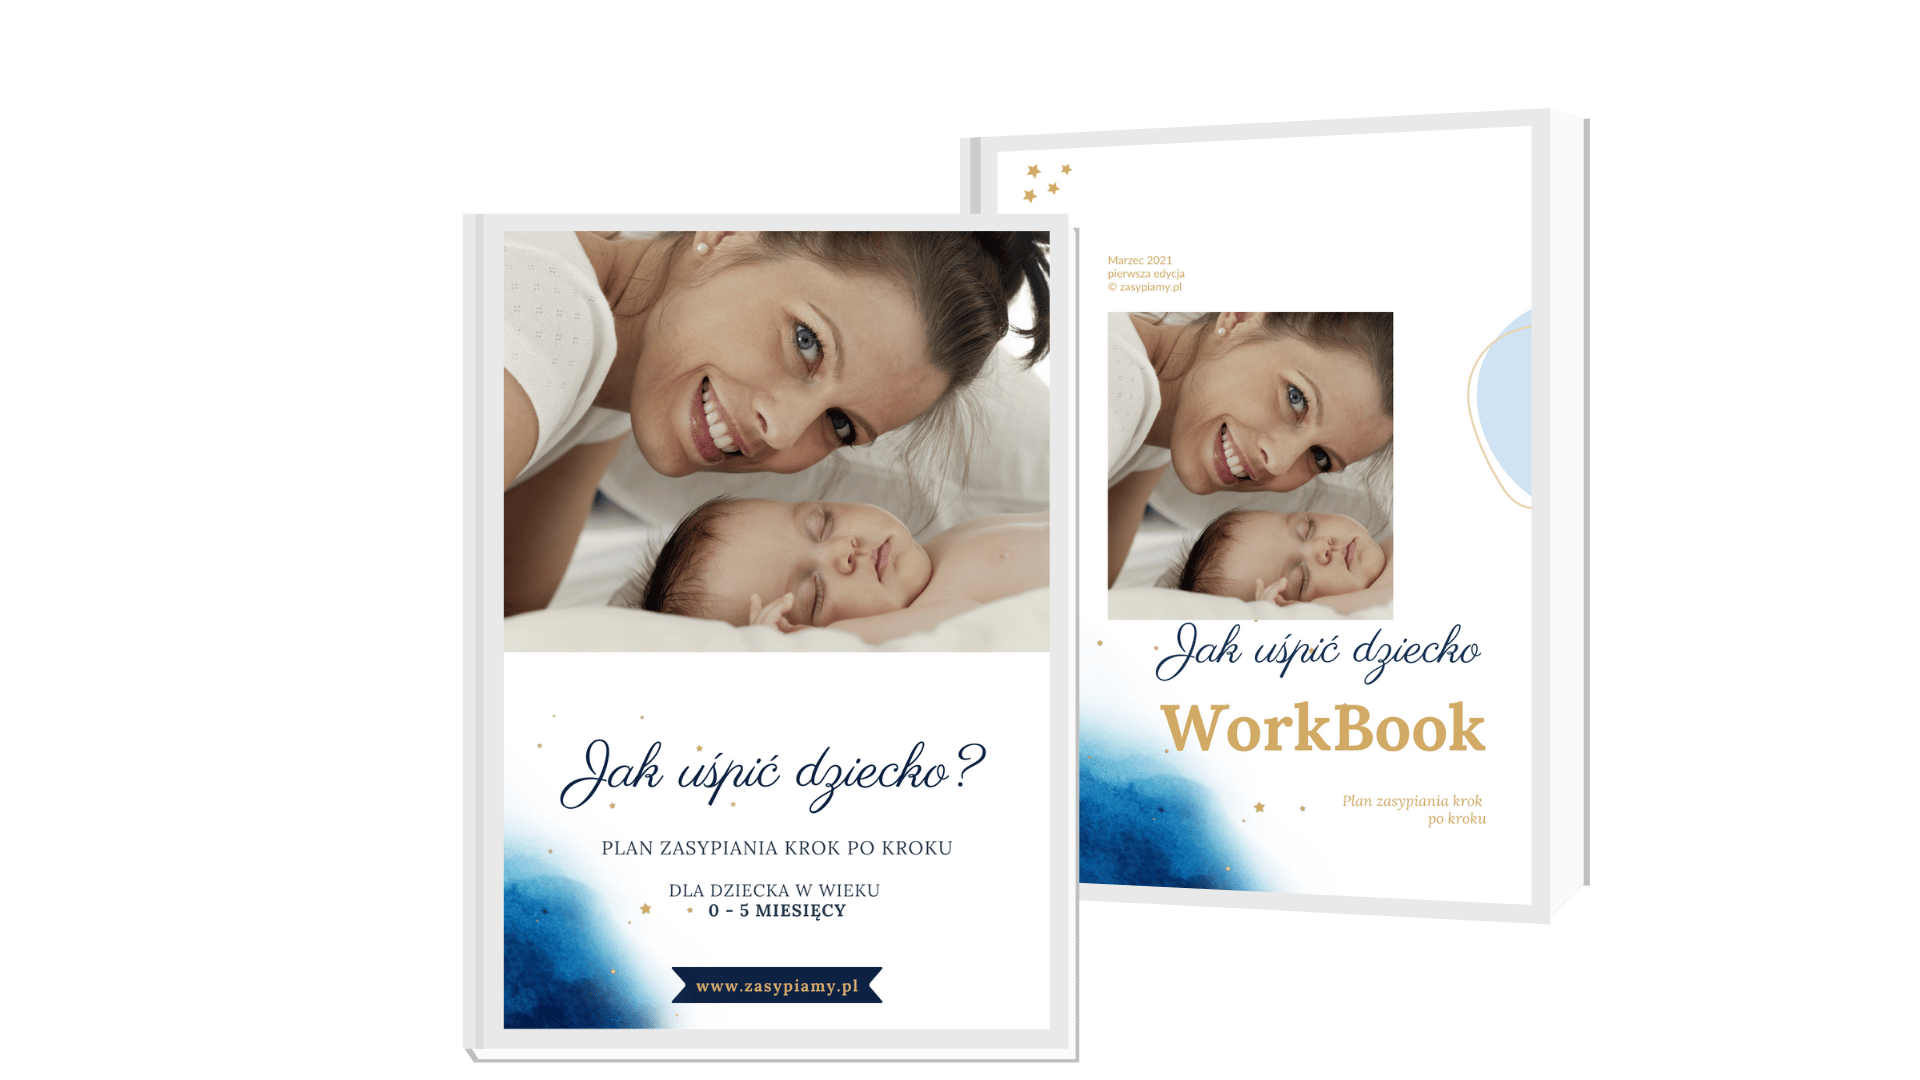 ebook workbook jak uspic dziecko usypianie niemowlat rady